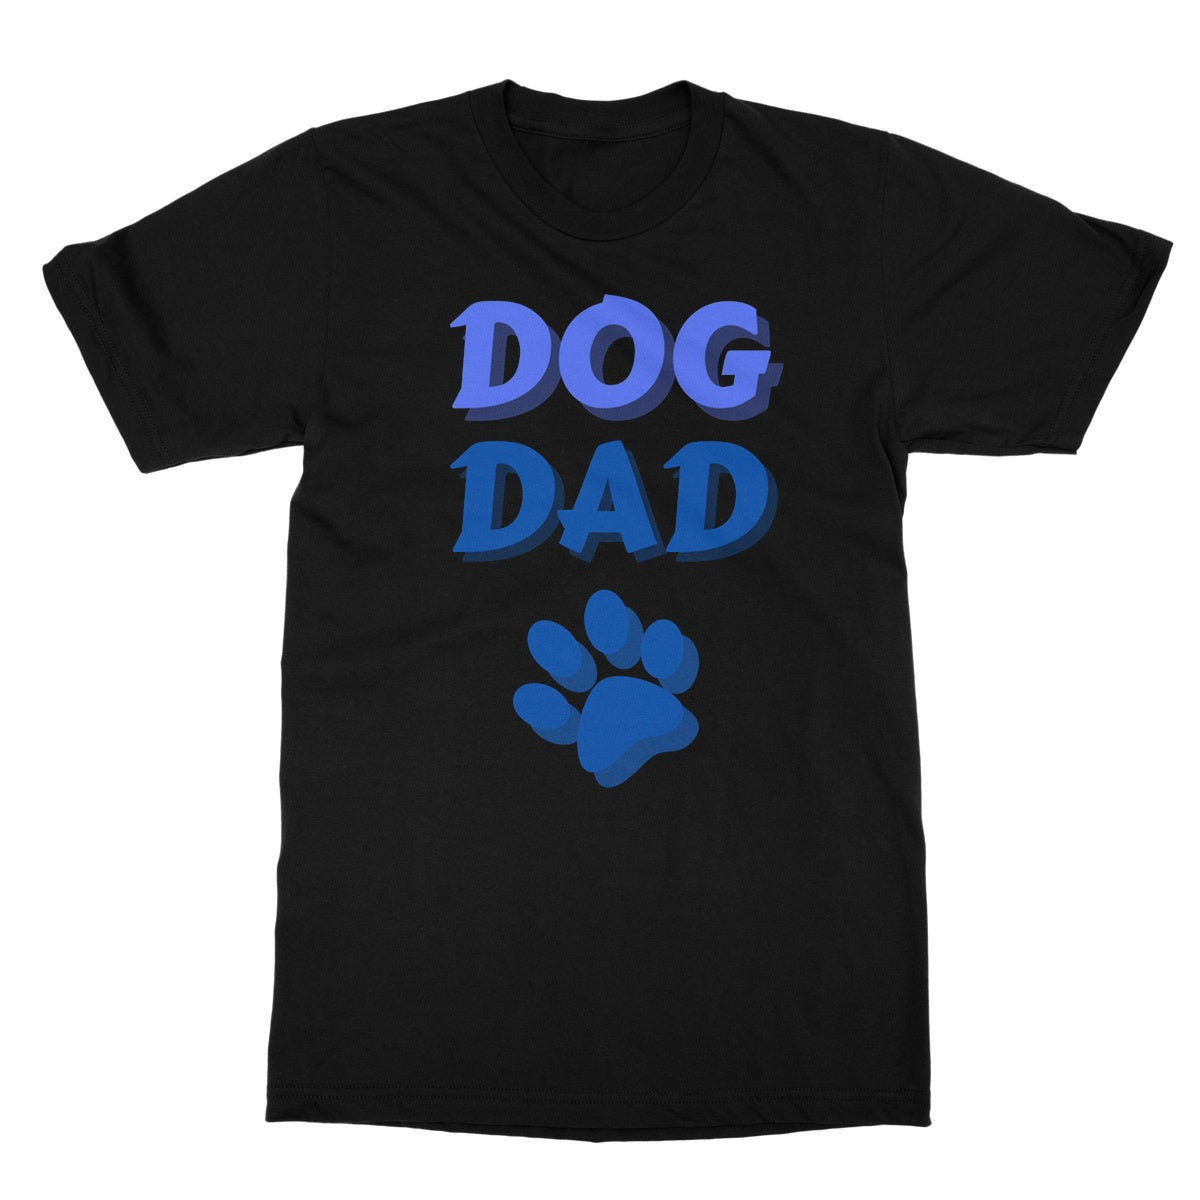 dog dad t shirt black